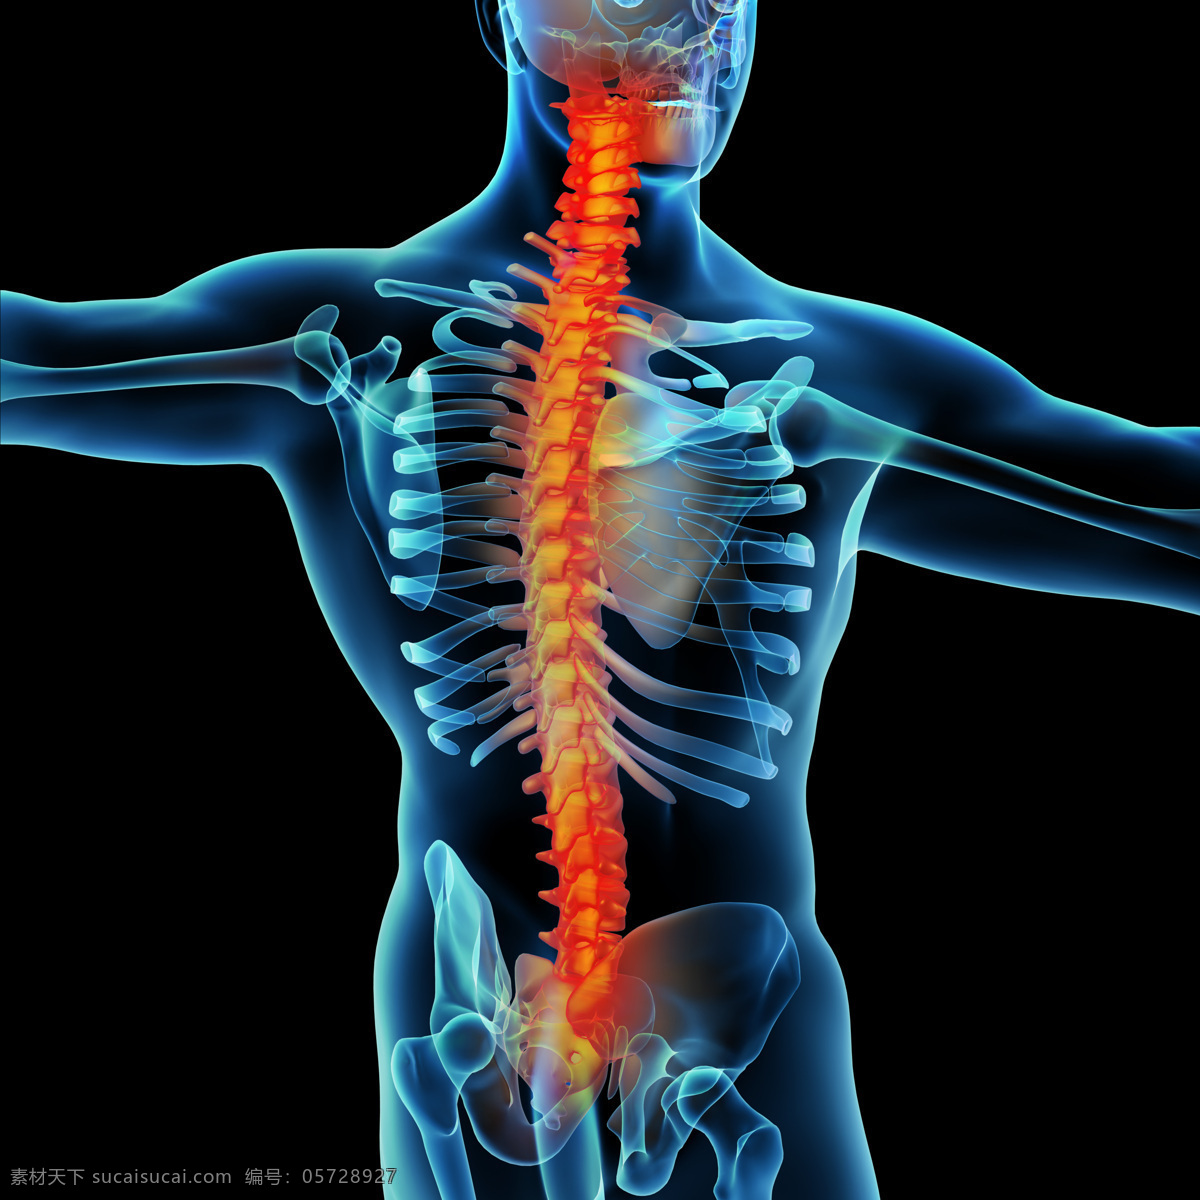 颈椎 科学研究 人体骨骼 现代科技 医疗 医学 脊椎 肌肉 骨骼 结构 脊柱 人体结构 人体肌肉 人体标本 人体构造 矢量图